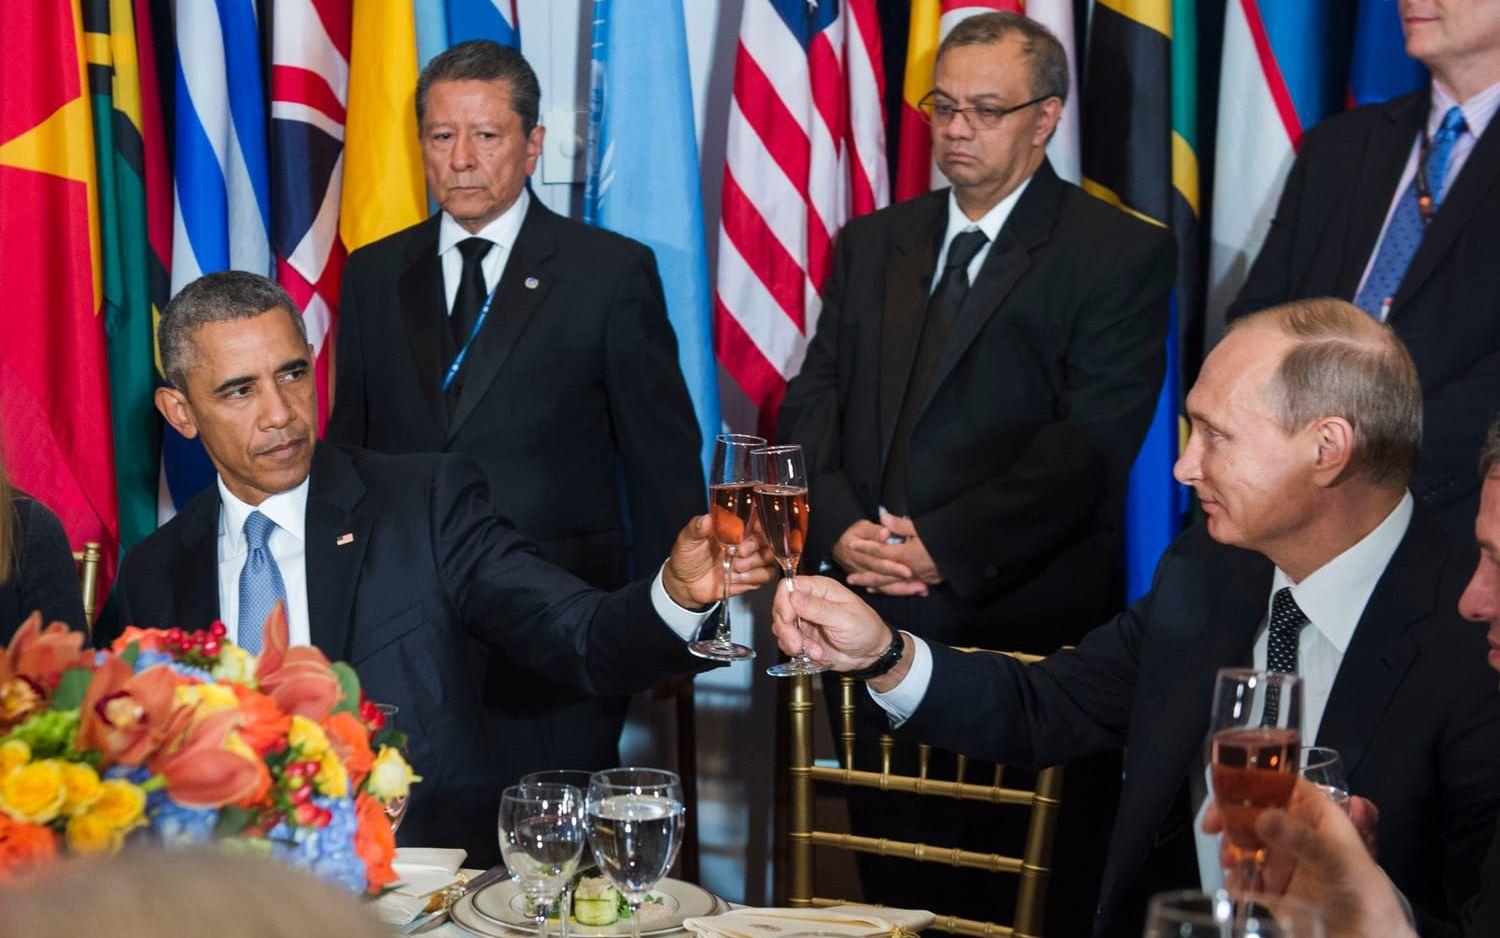 <strong>VIKER INTE EN TUM. </strong>Stelt och obekvämt var ord som beskrev stämningen under en lunchträff mellan Vladimir Putin och Barack Obama när FN:s säkerhetsråd sammanträdde i september 2015.